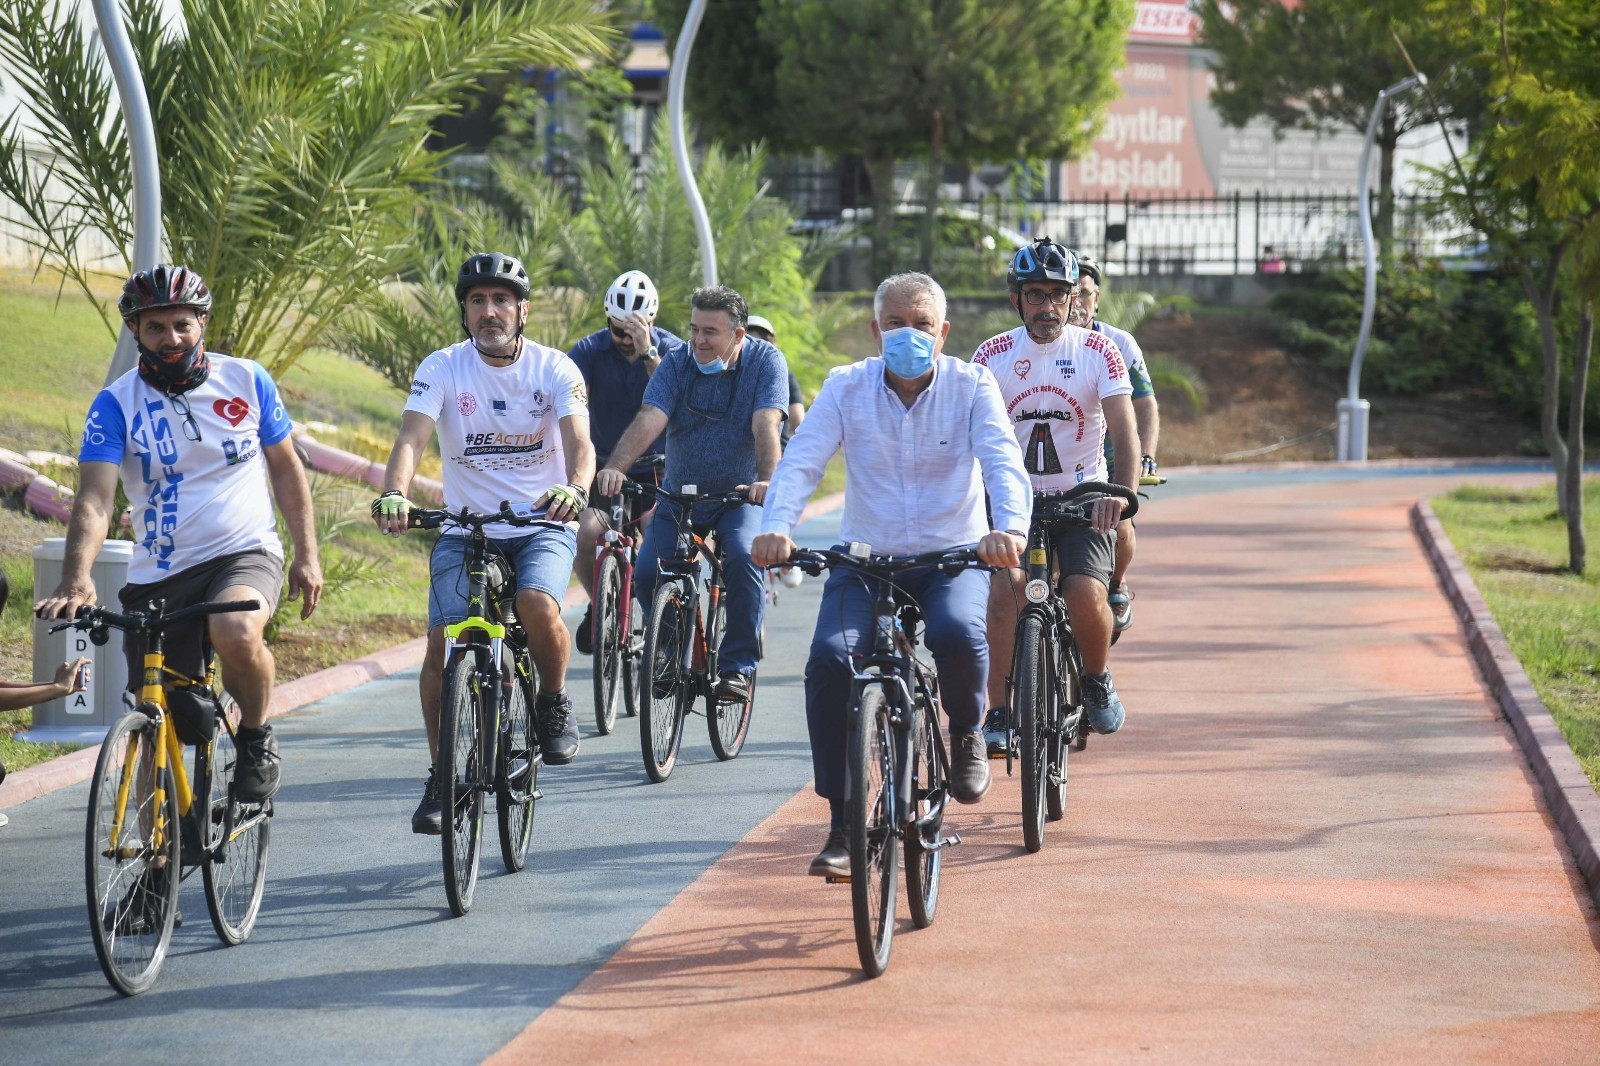 Karalar, vatandaşları bisikletle ulaşıma davet etti